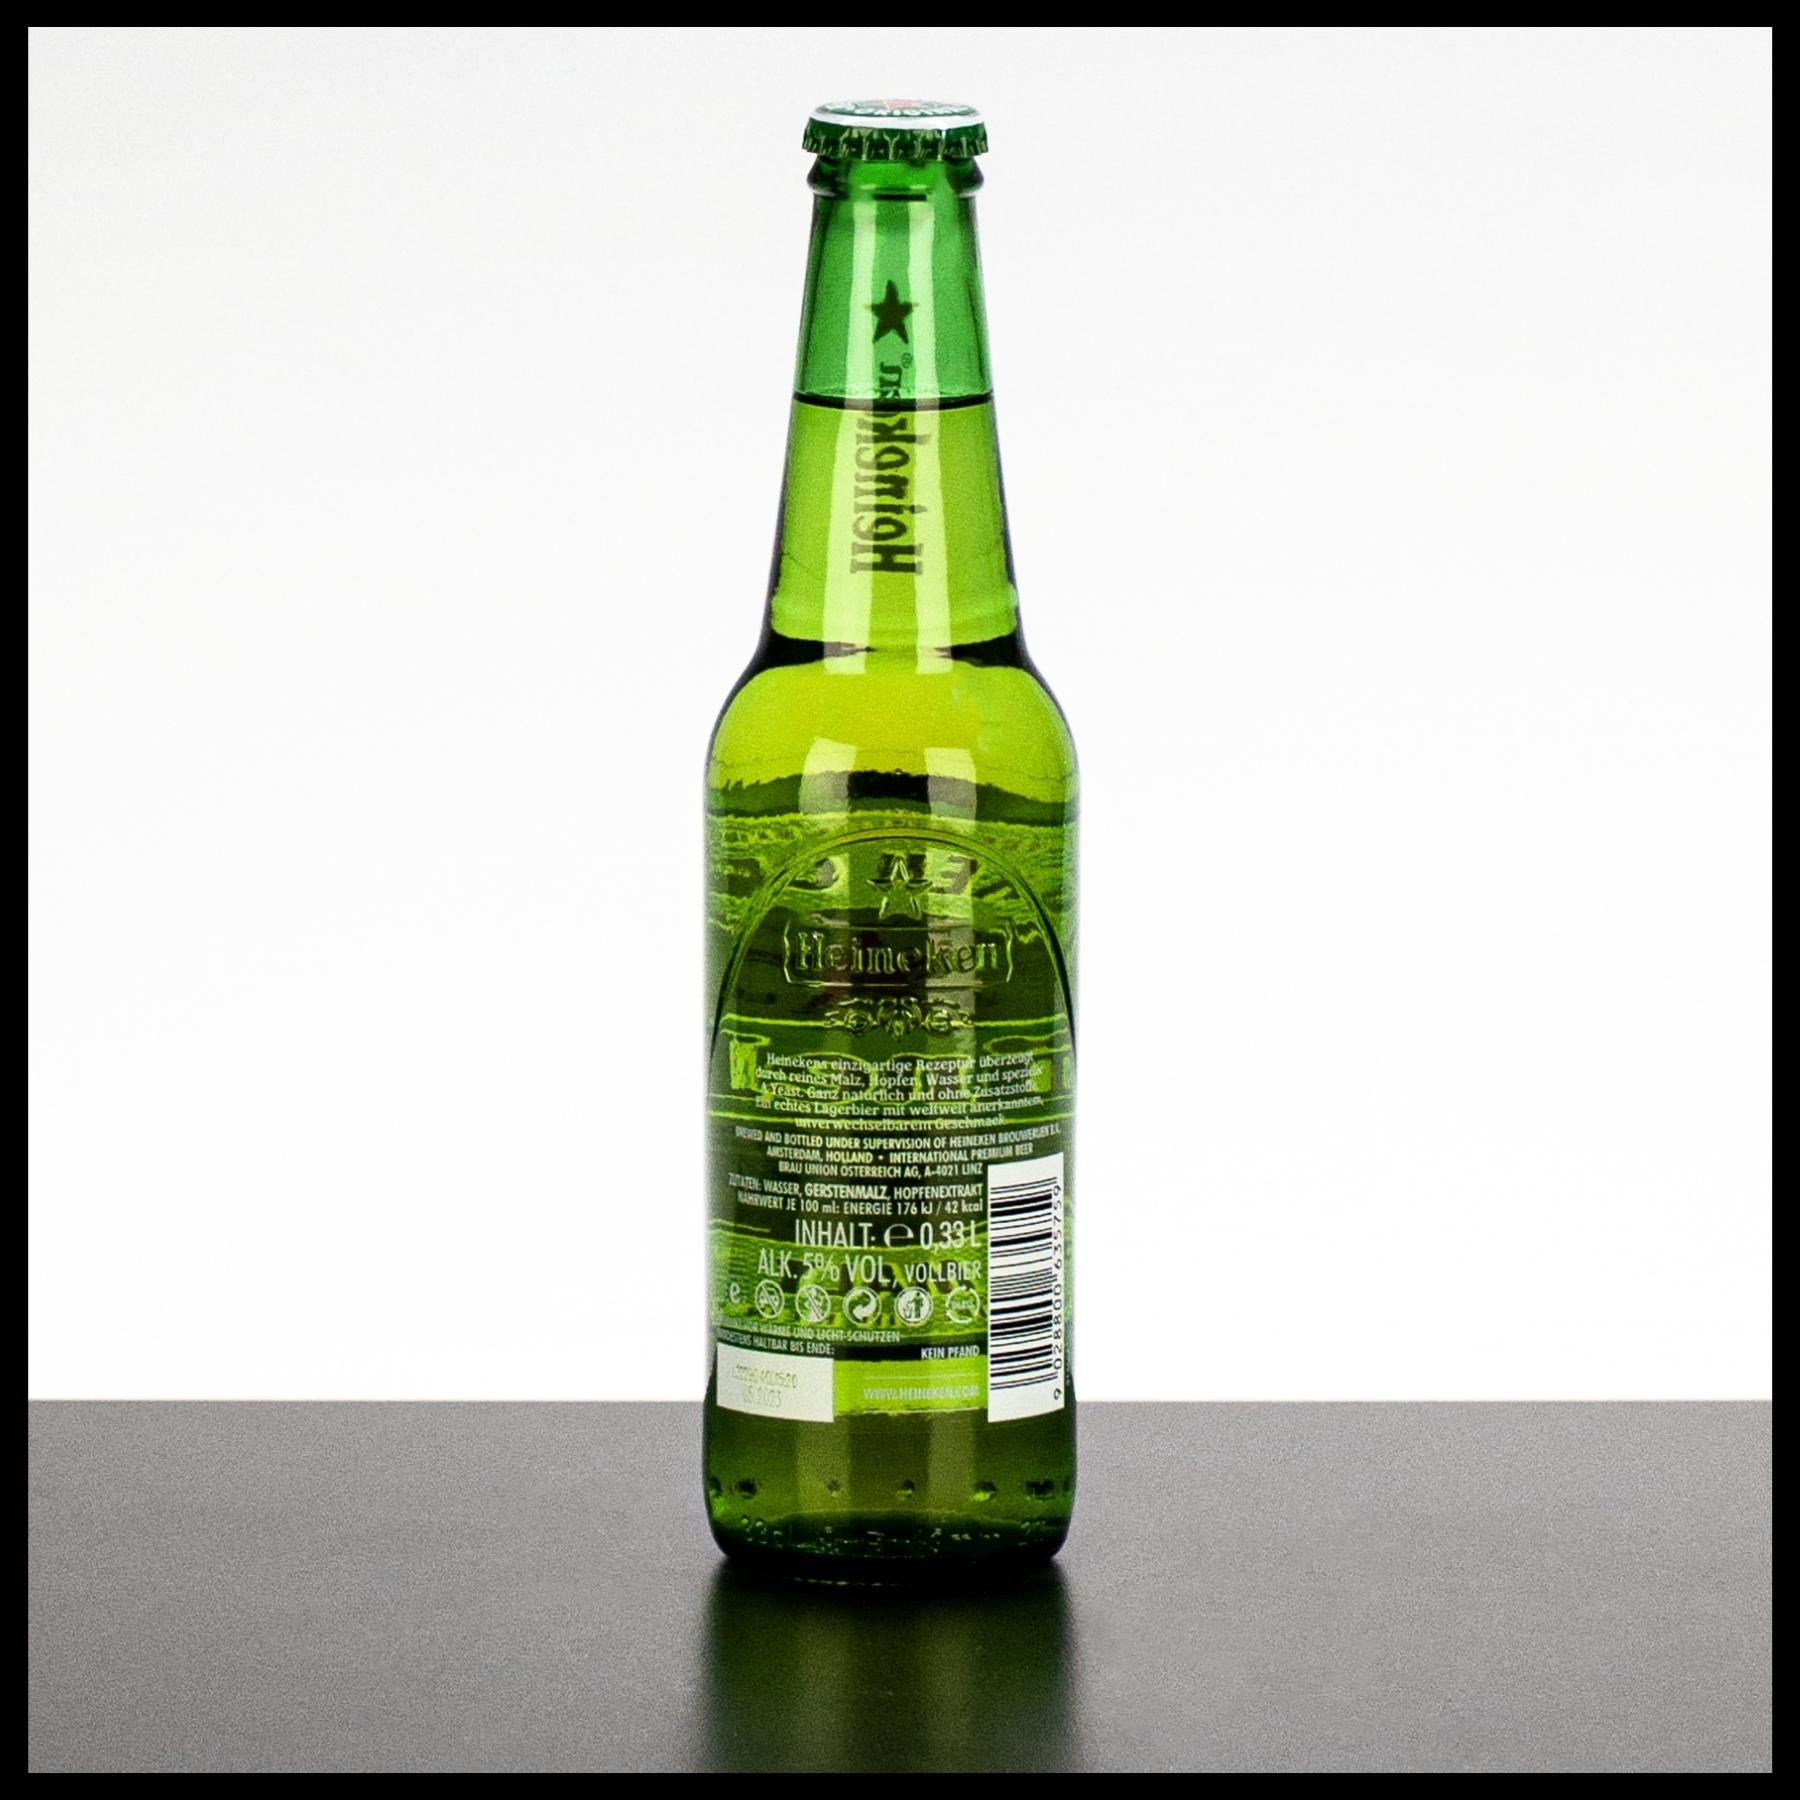 Heineken Original Lager Bier 0,33L - 5% Vol. - Trinklusiv